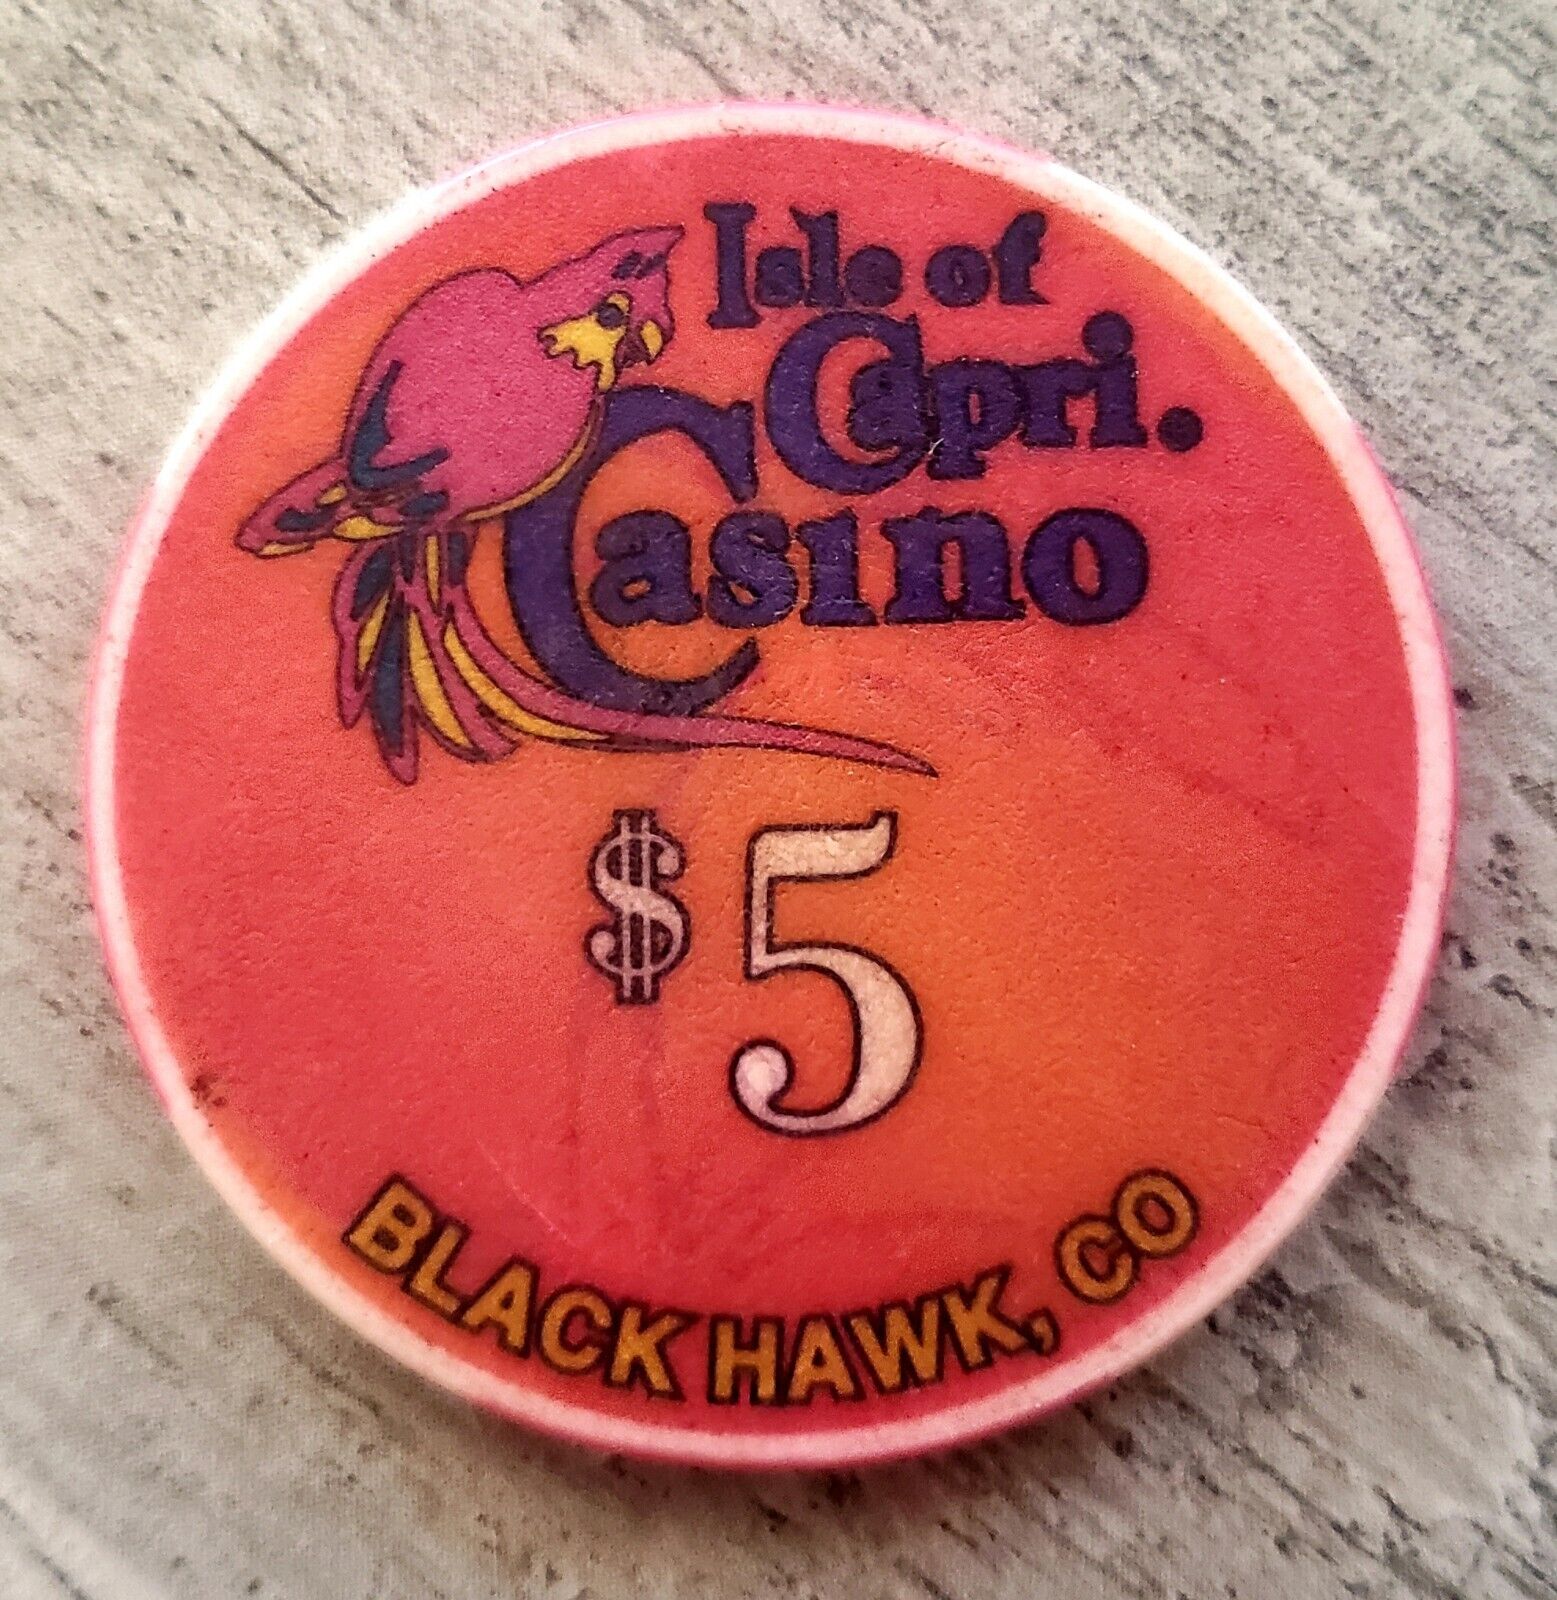 $5 Isle of Capri Casino Chip - Black Hawk, Colorado